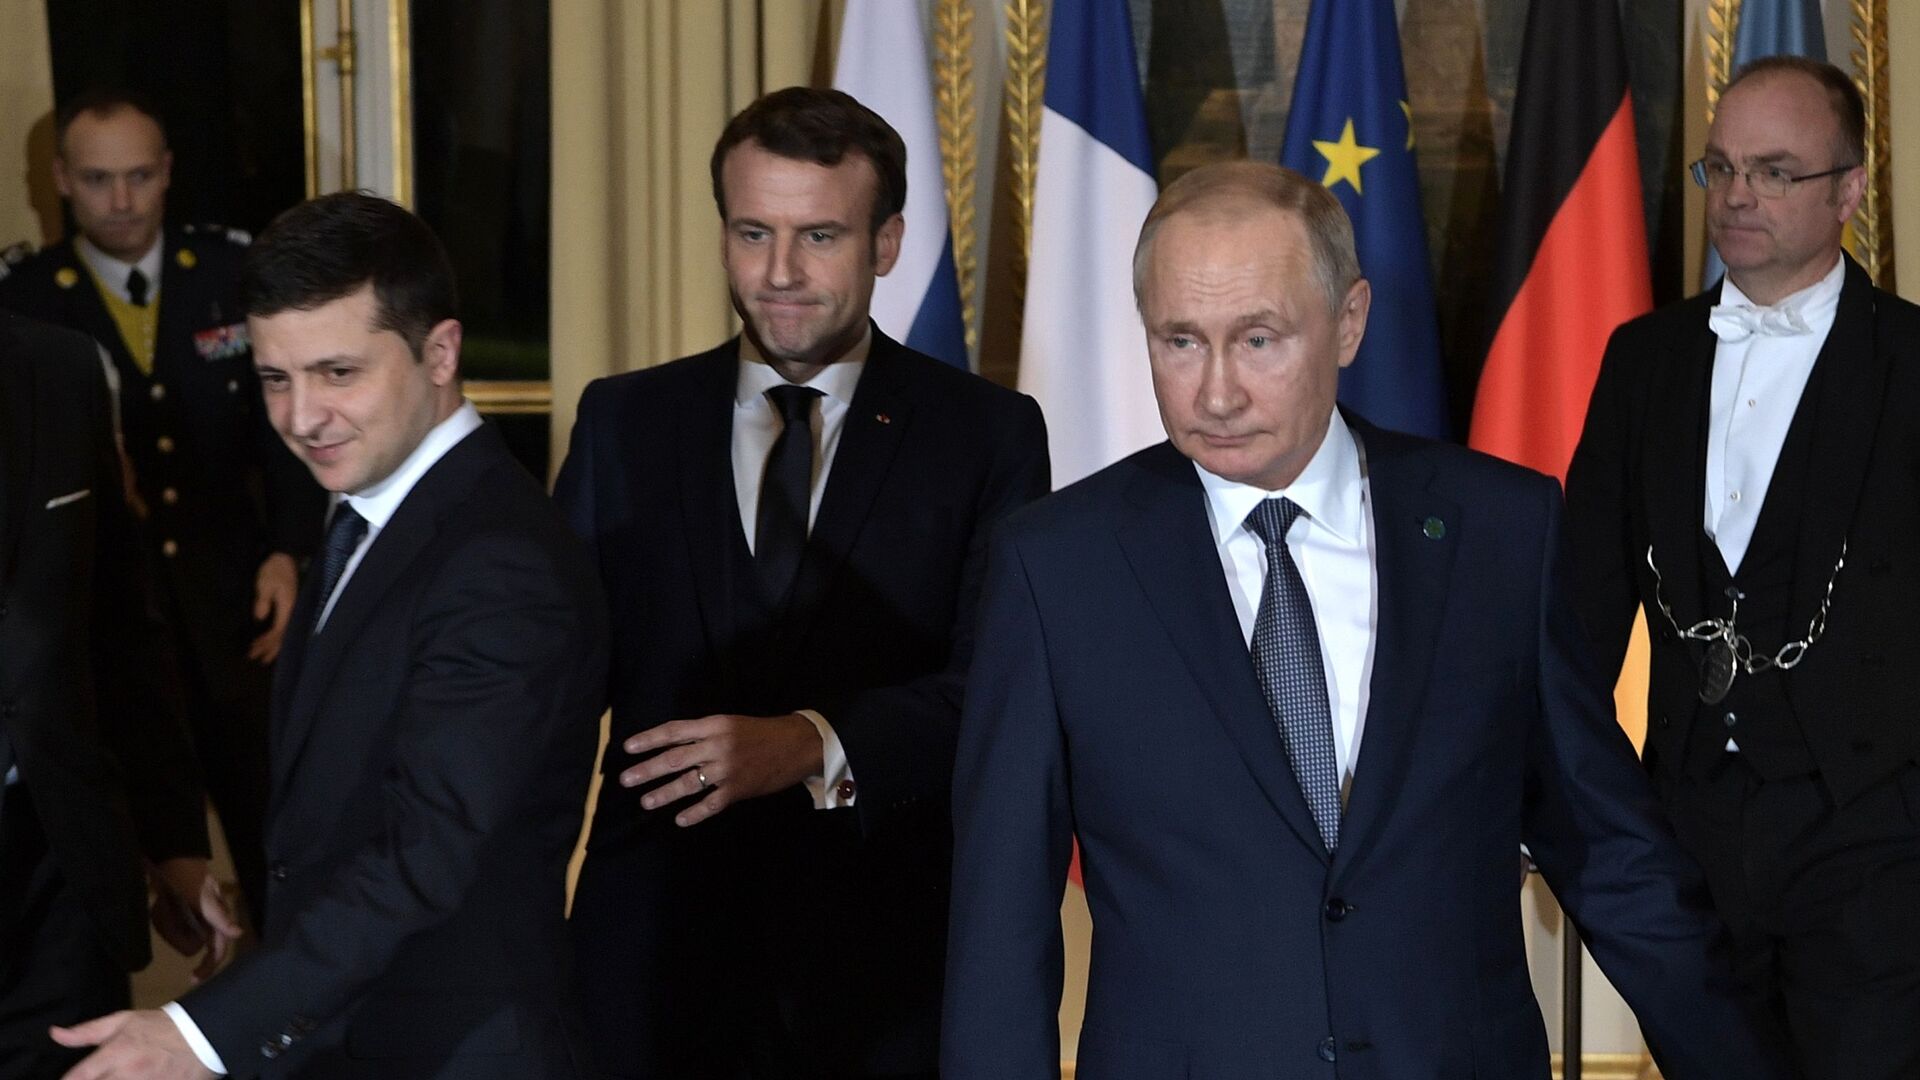  Vladimir Putin, Vladimir Zelensky và Tổng thống Pháp Emmanuel Macron ( cuộc gặp gỡ theo  “định dạng Normandy” (09.12.2019).  - Sputnik Việt Nam, 1920, 25.01.2023